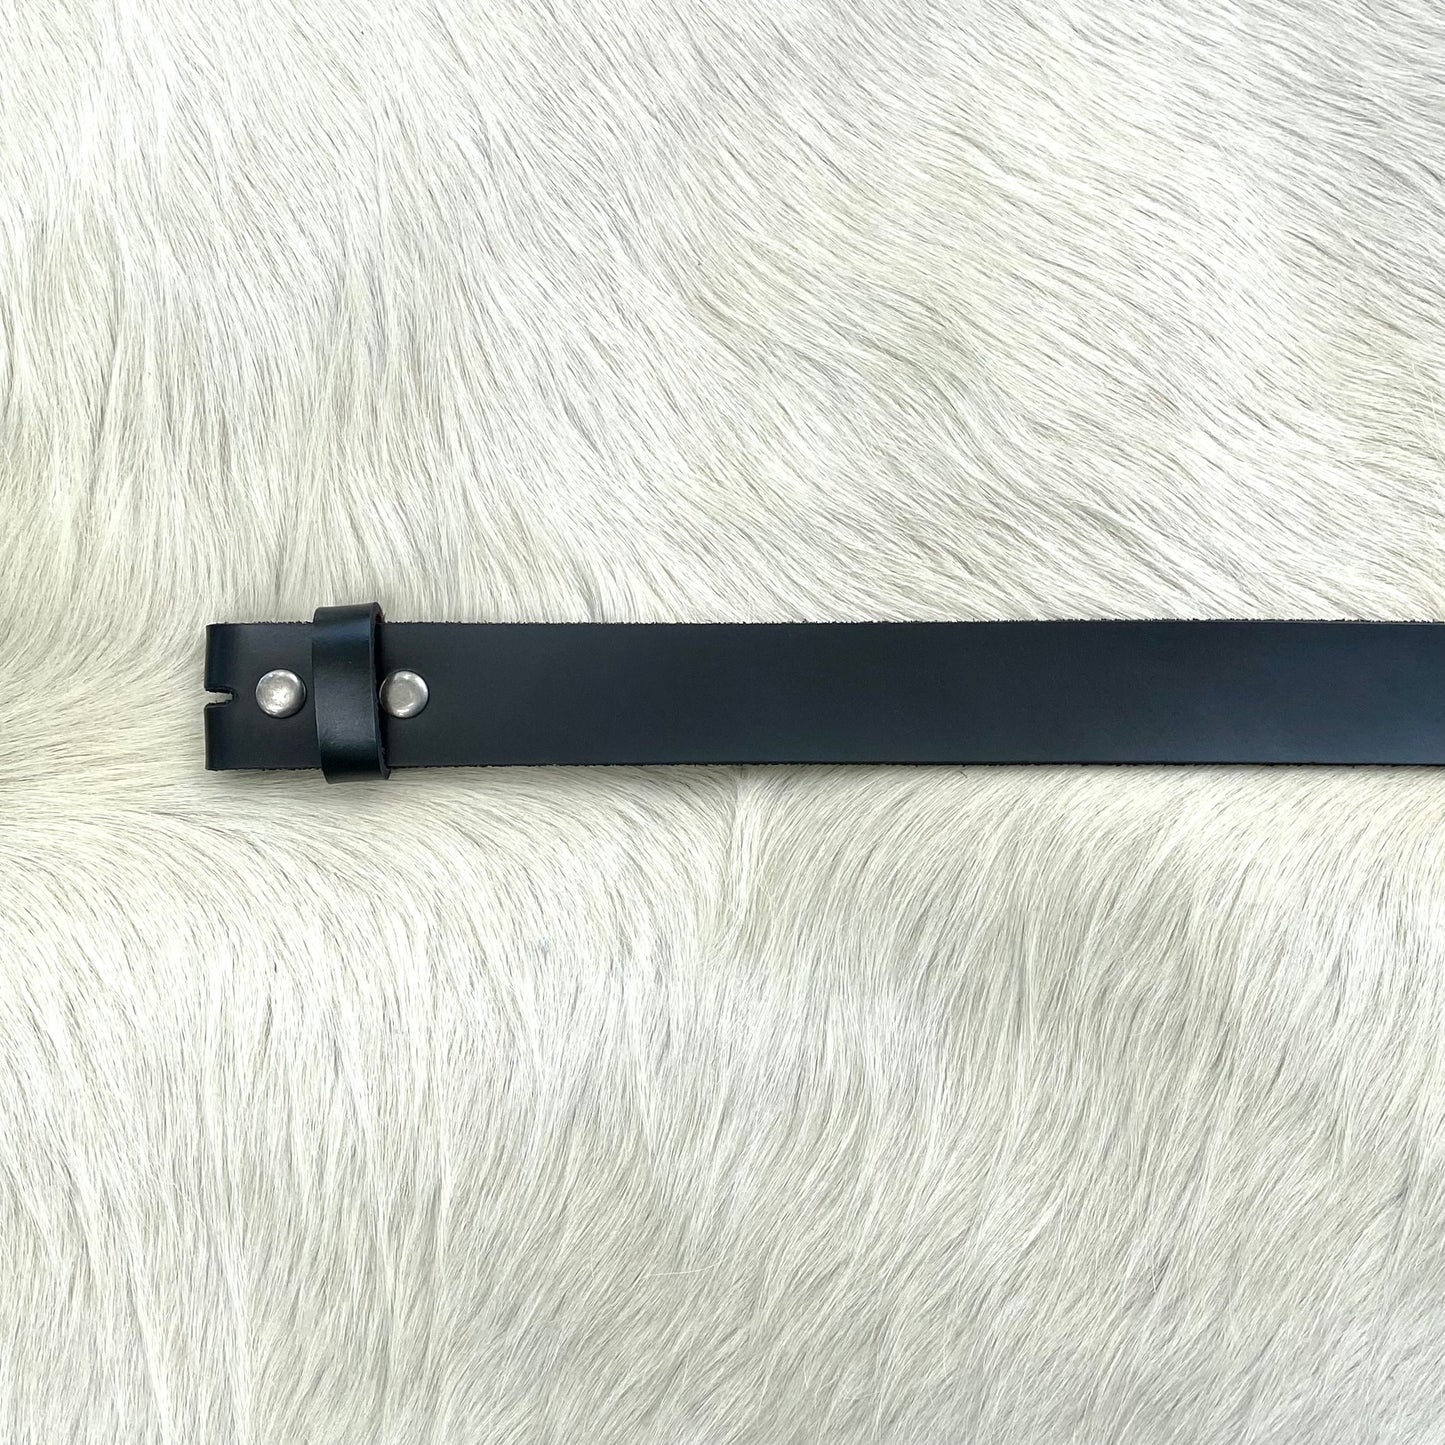 Black Leather Belt Strap